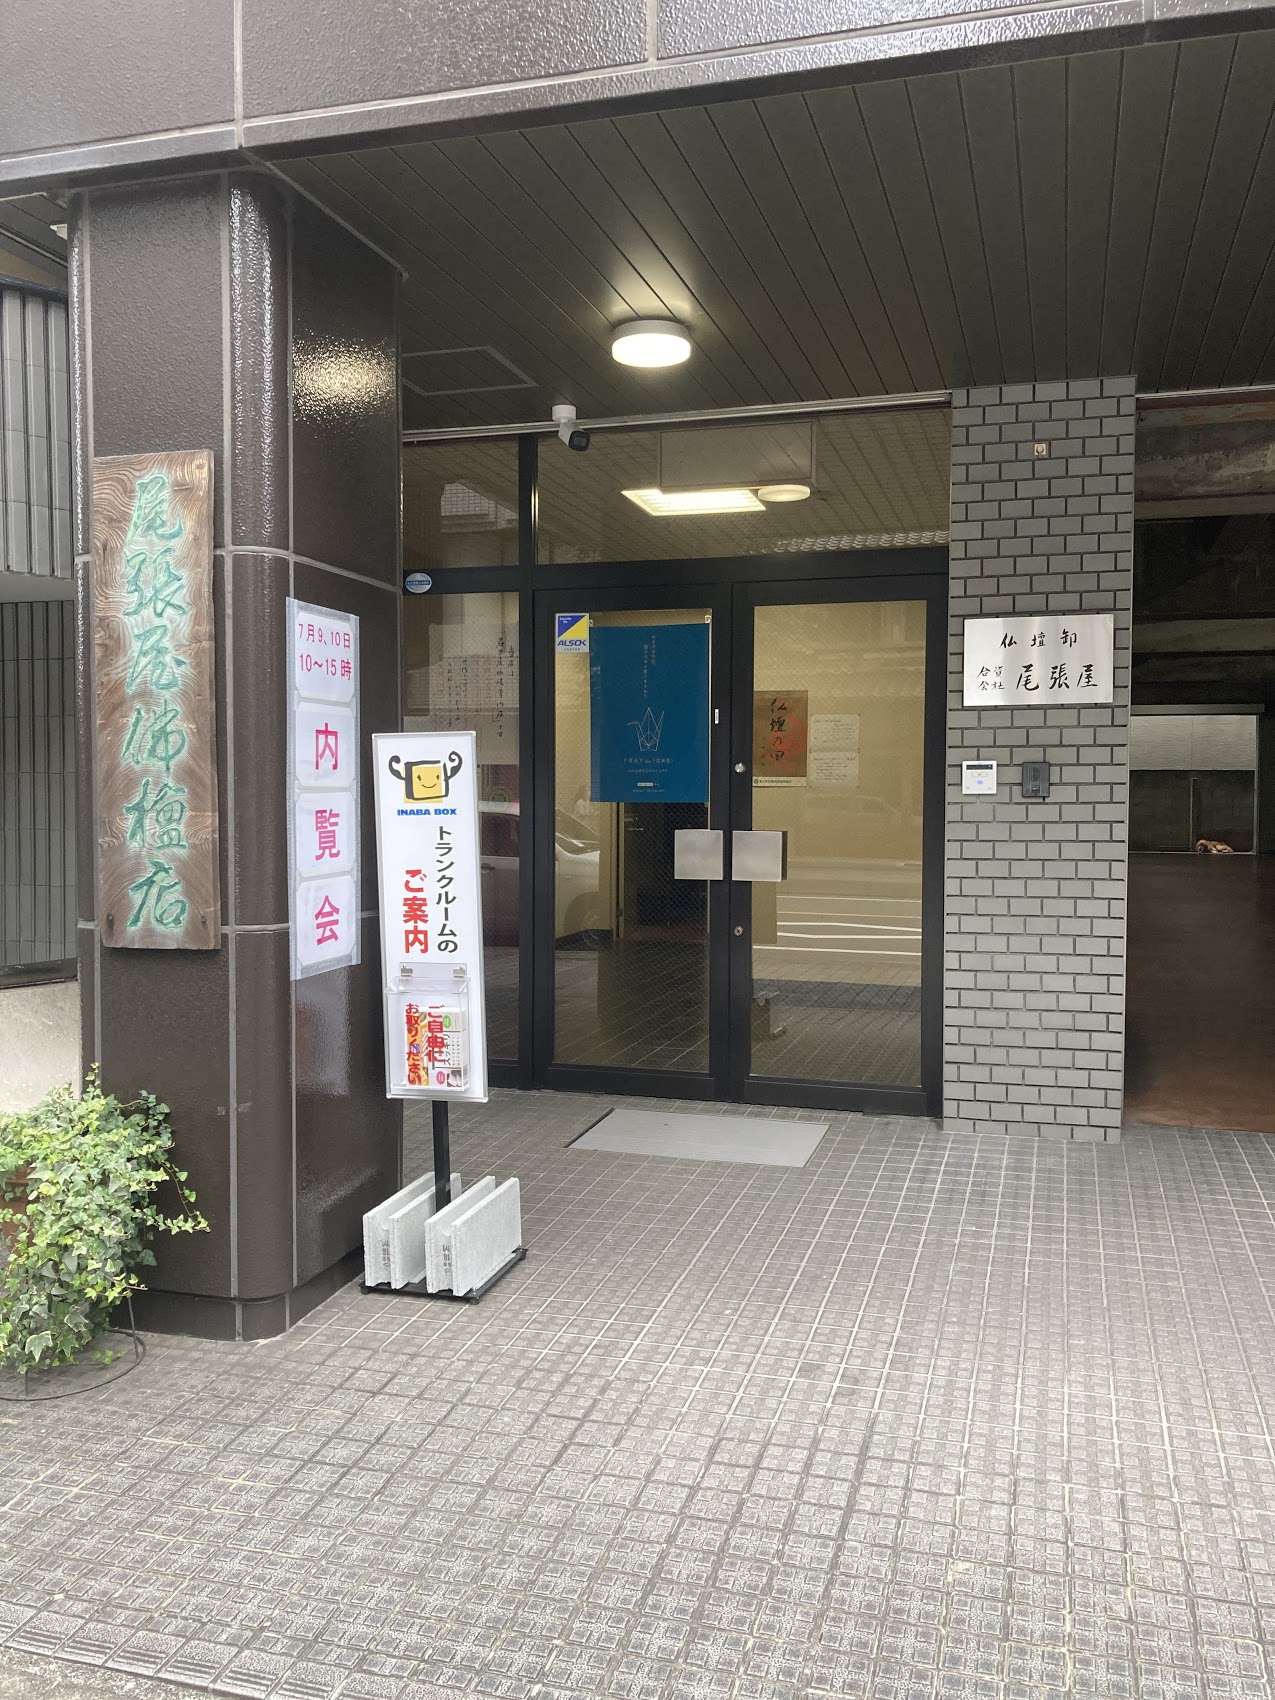 橘本町通り店(たちばなほんまちどおり) 1F店舗入口